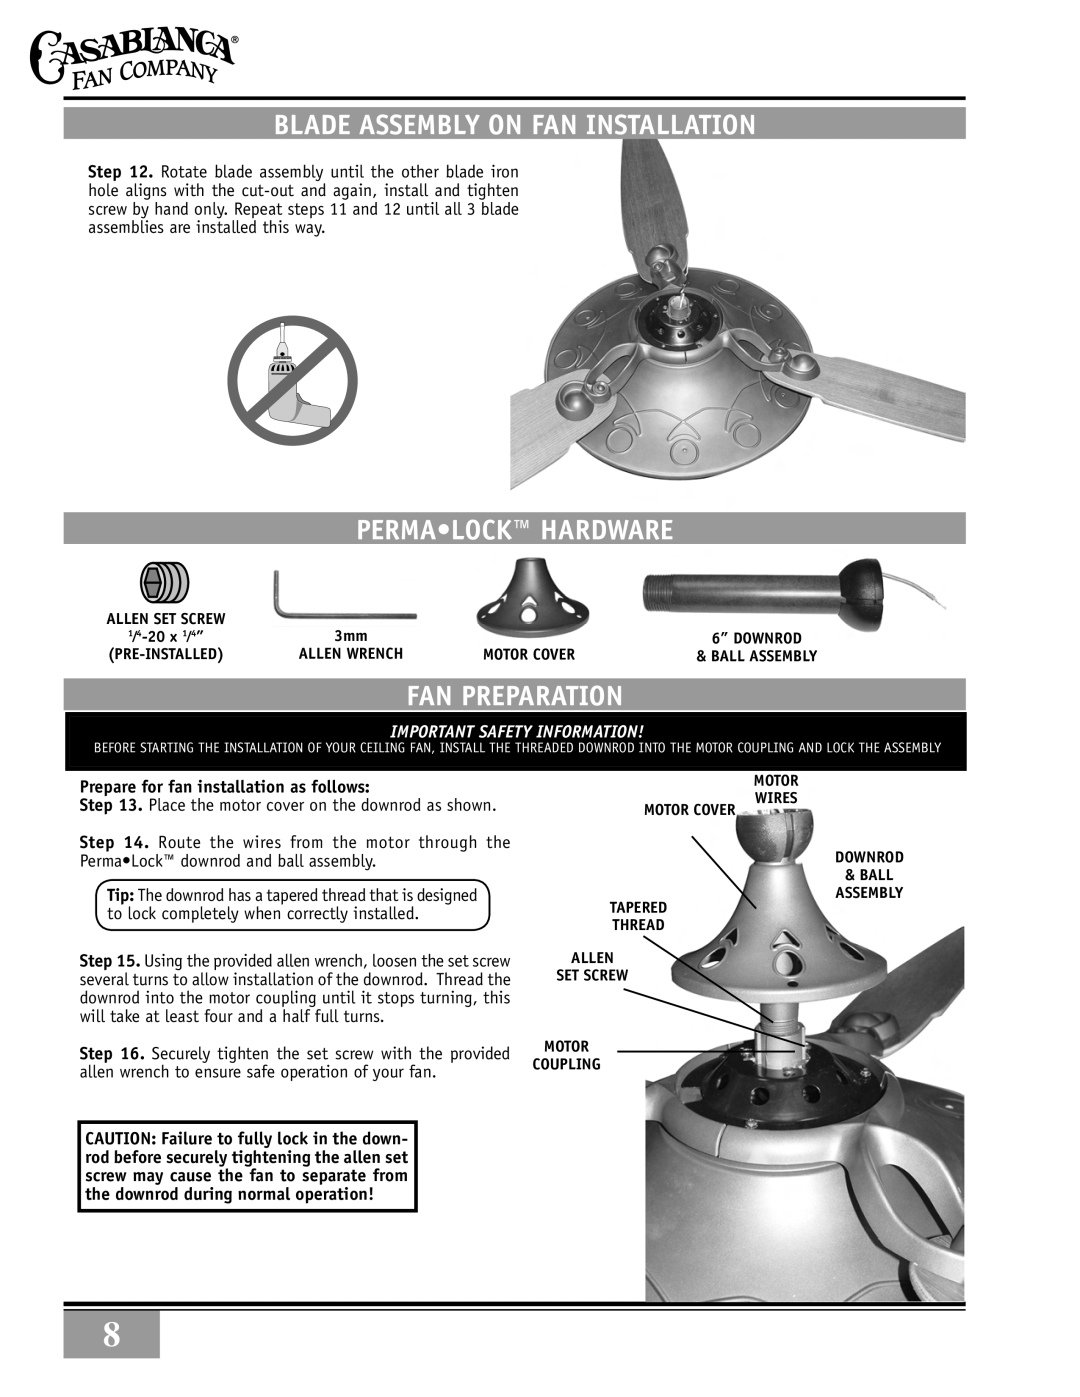 Casablanca Fan Company 89UXXM warranty blade assembly on fan installation, Perma•lock Hardware, Fan preparation 